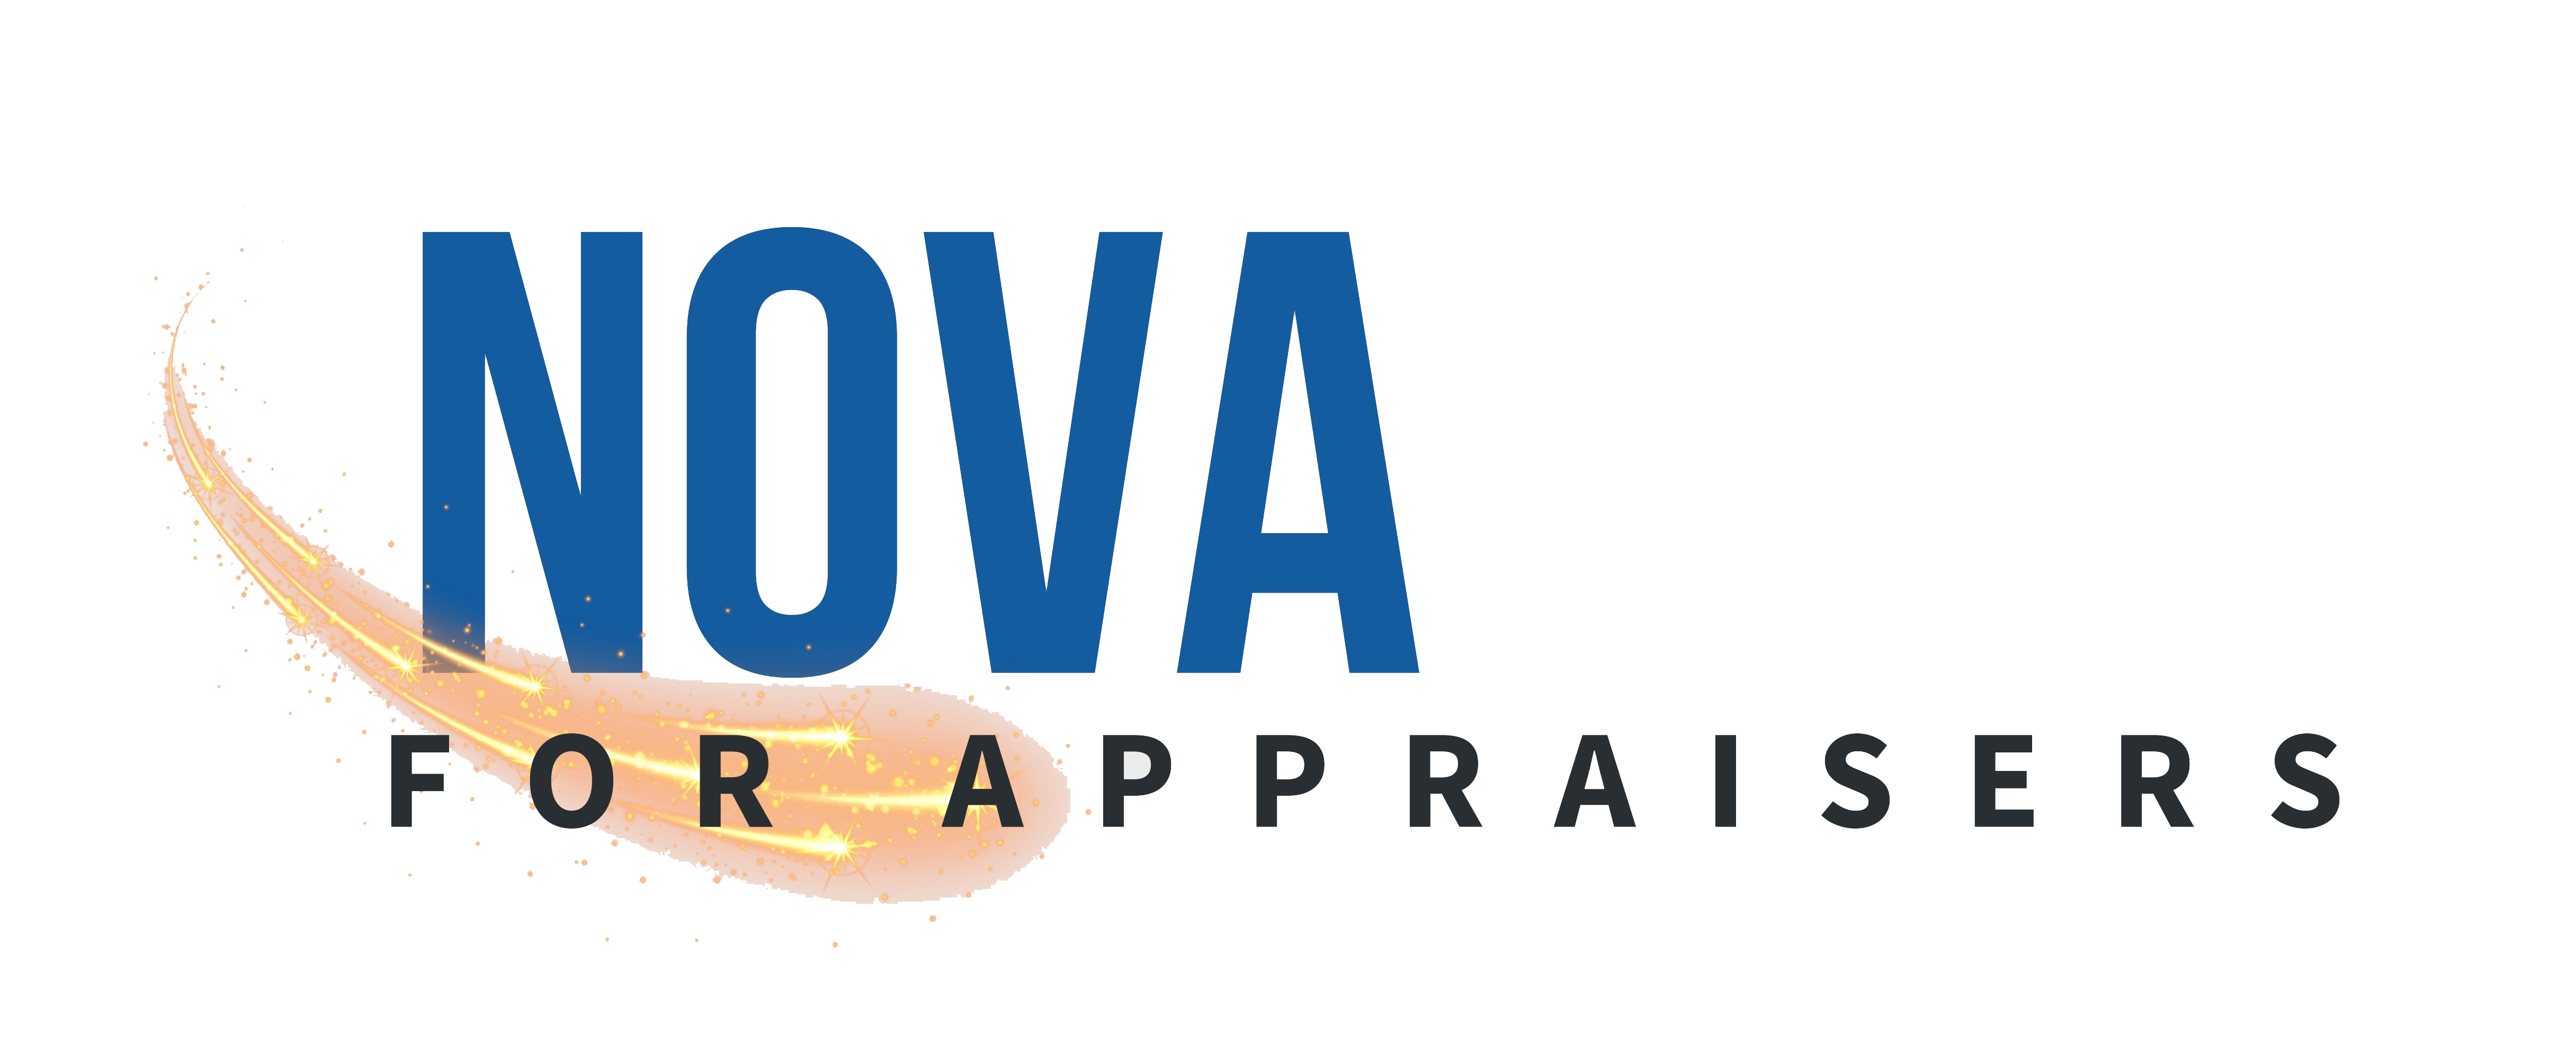 Nova for appraisers